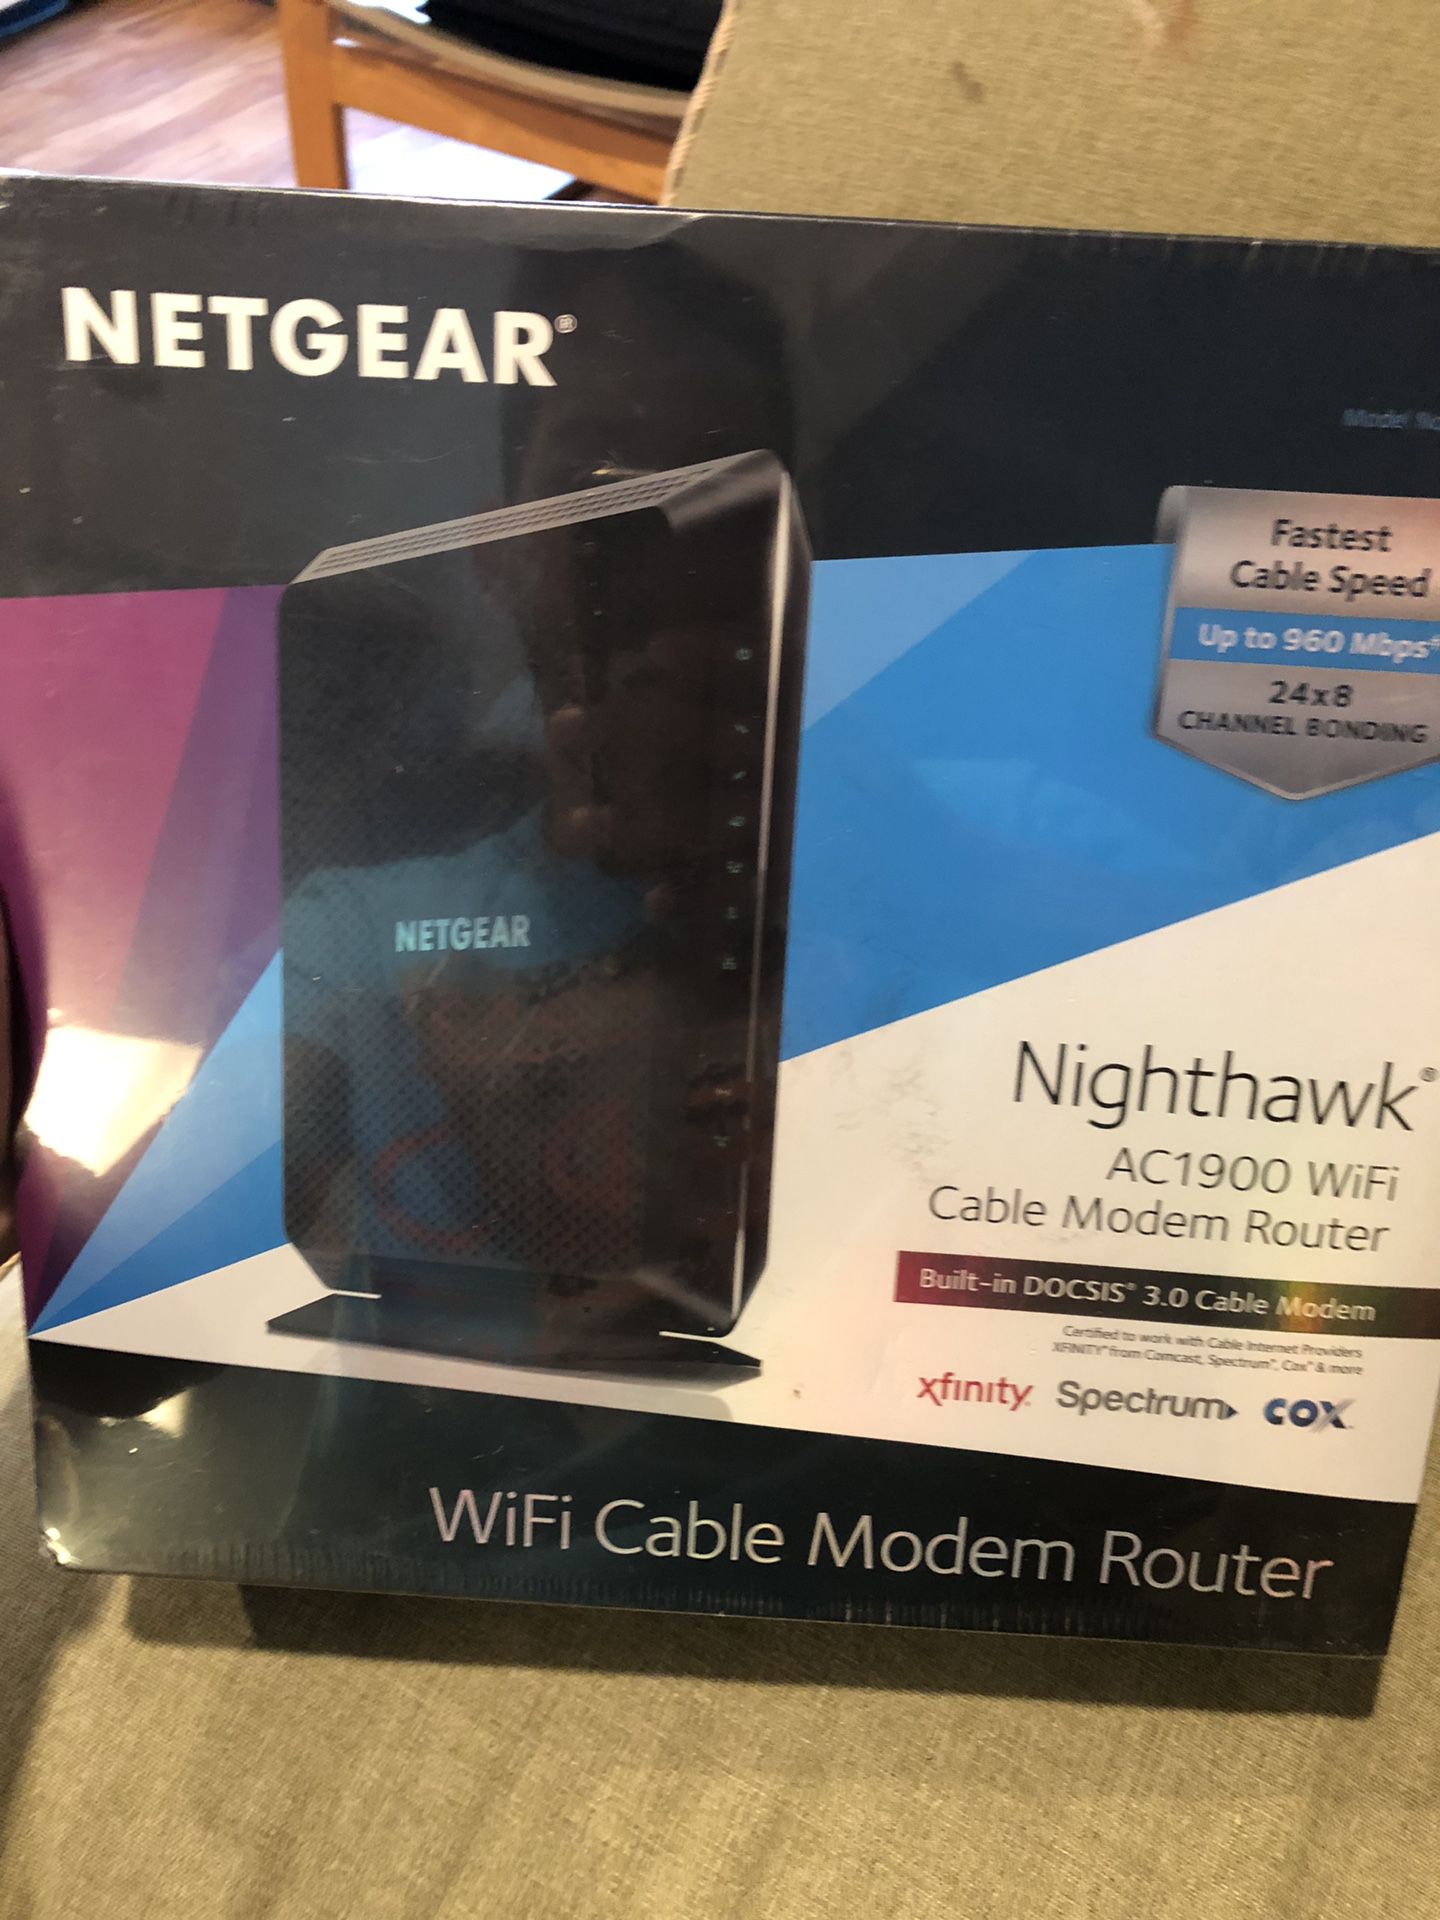 Netgear NightHawk modem router